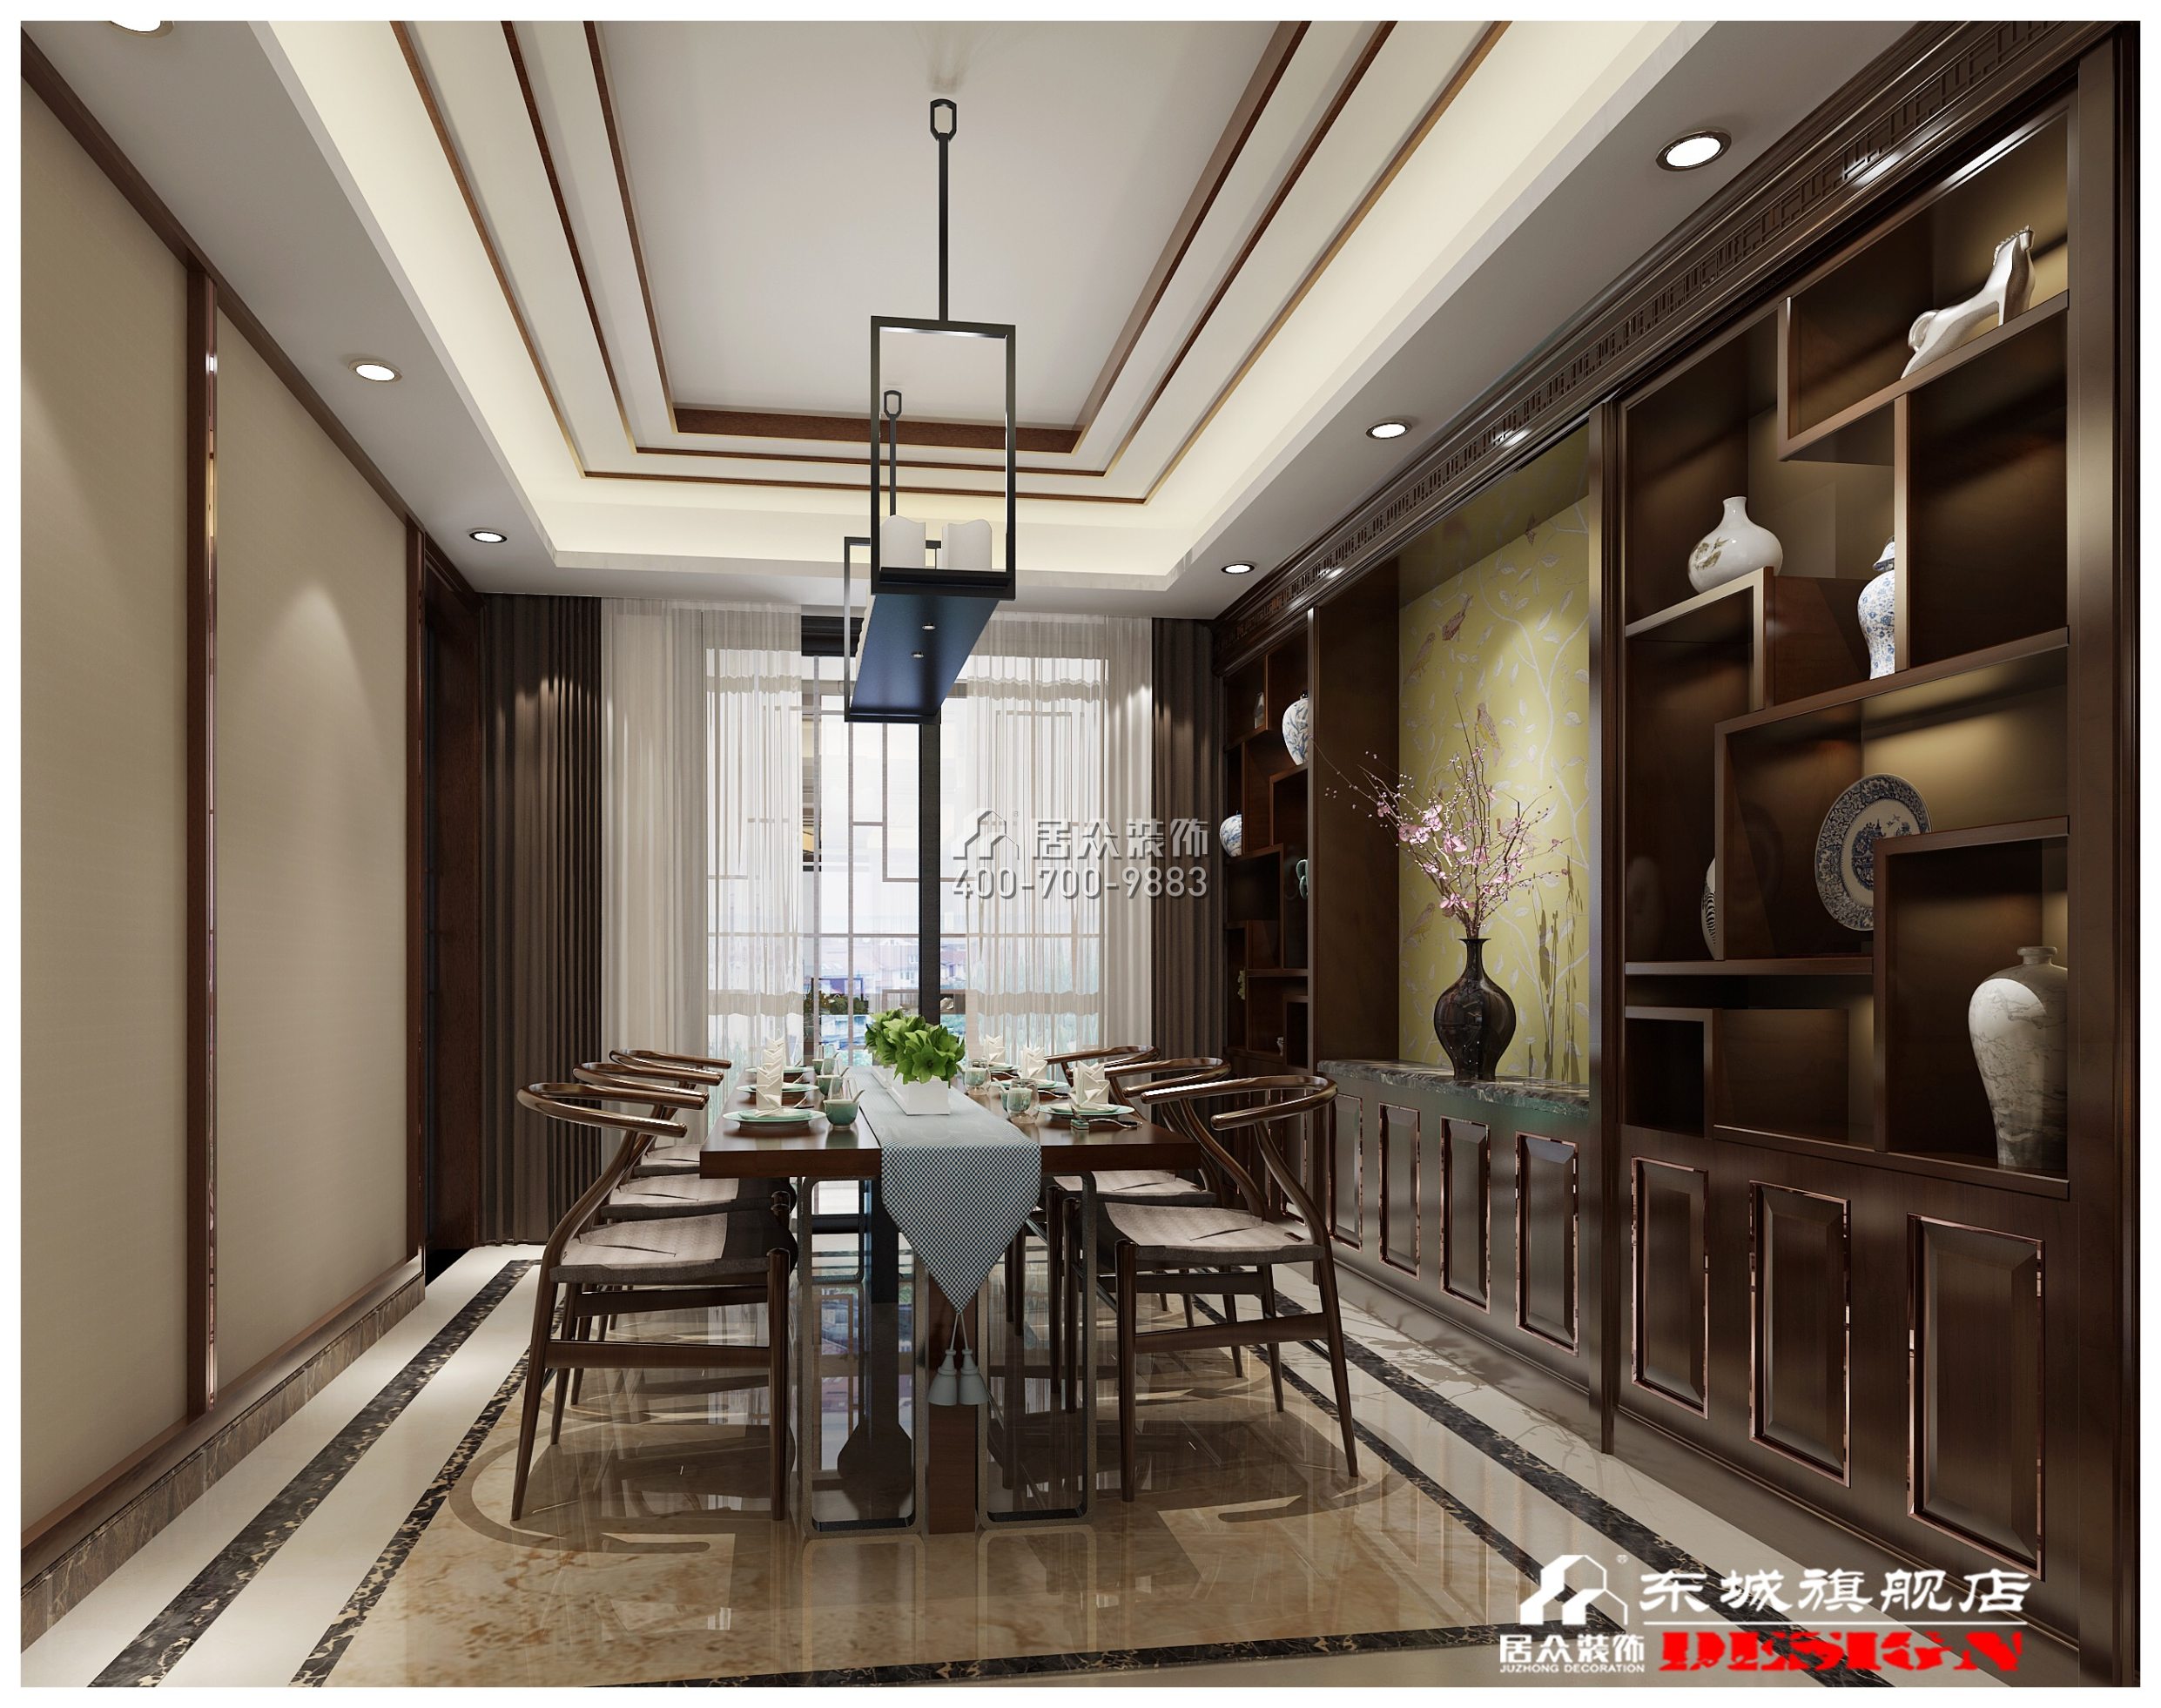 藏龙230平方米中式风格平层户型餐厅装修效果图